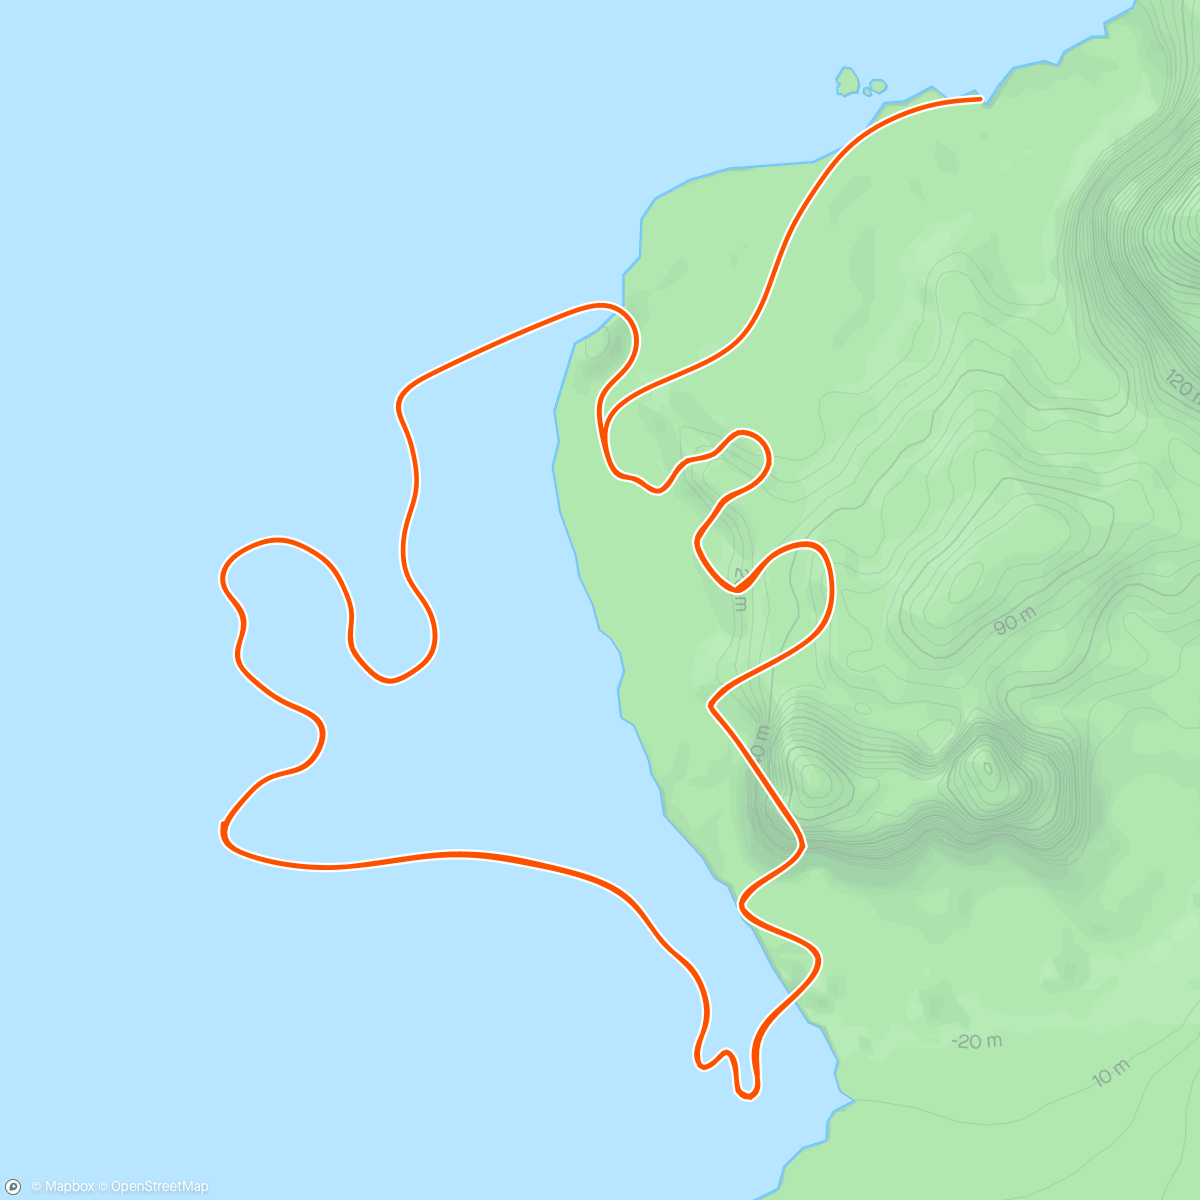 「Zwift - Race: Stage 3: Lap It Up - Seaside Sprint (B) on Seaside Sprint in Watopia」活動的地圖